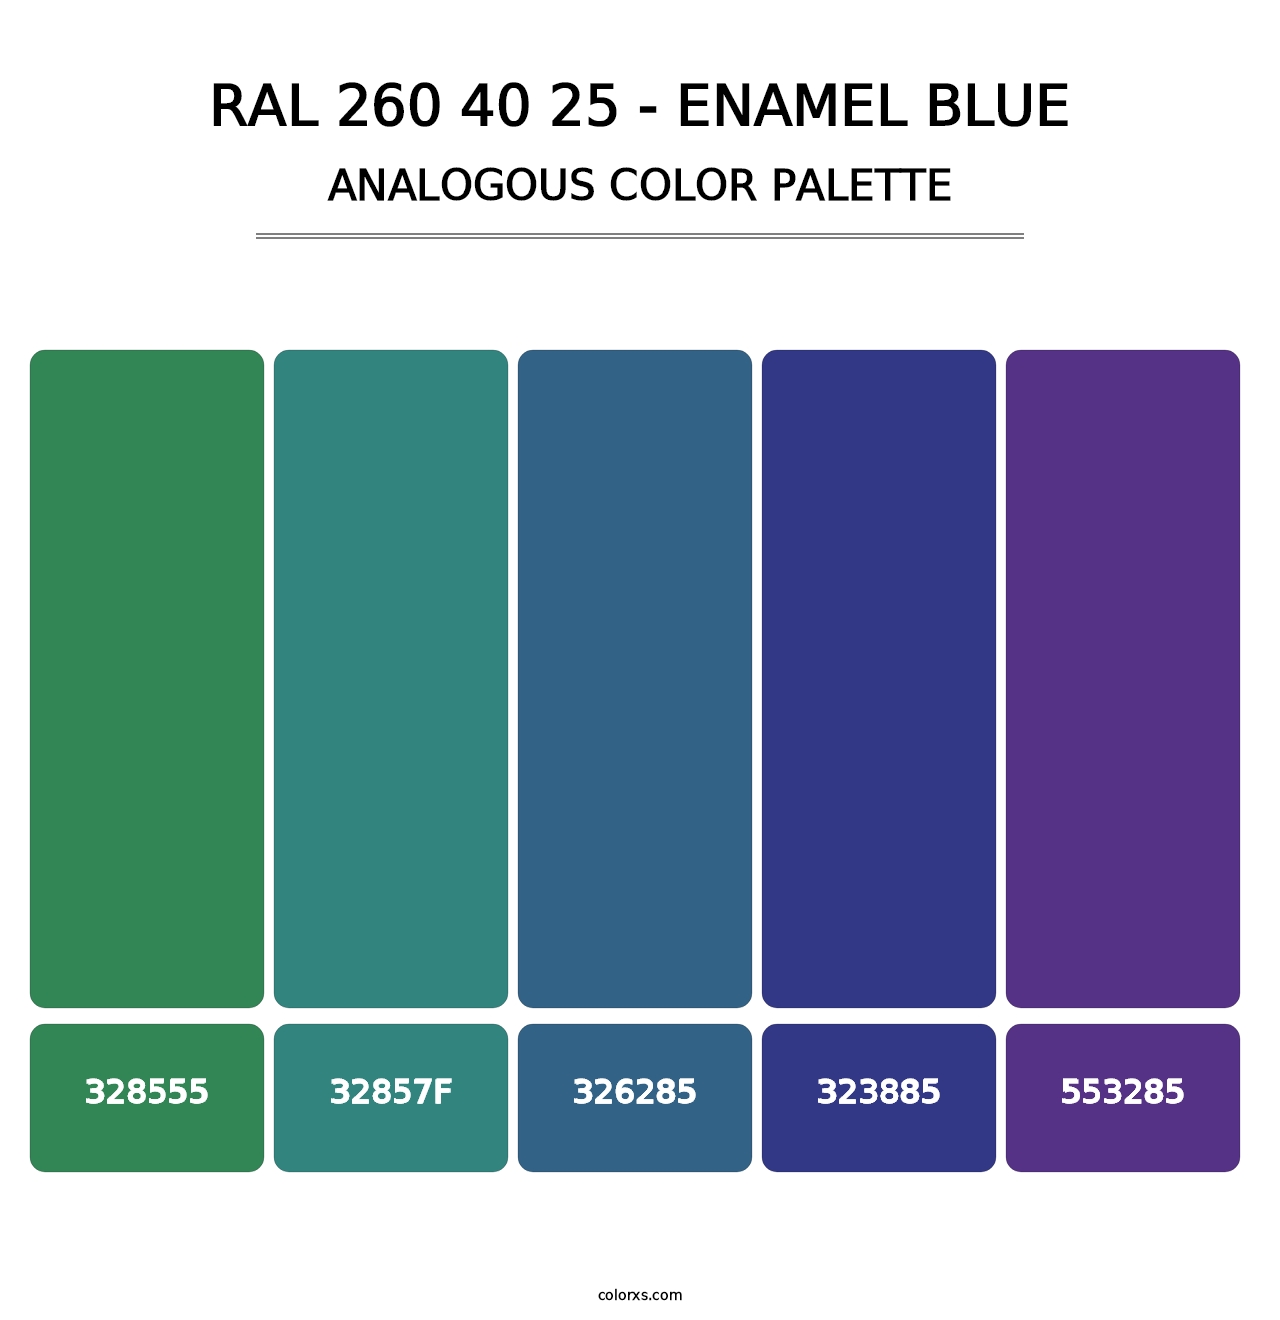 RAL 260 40 25 - Enamel Blue - Analogous Color Palette